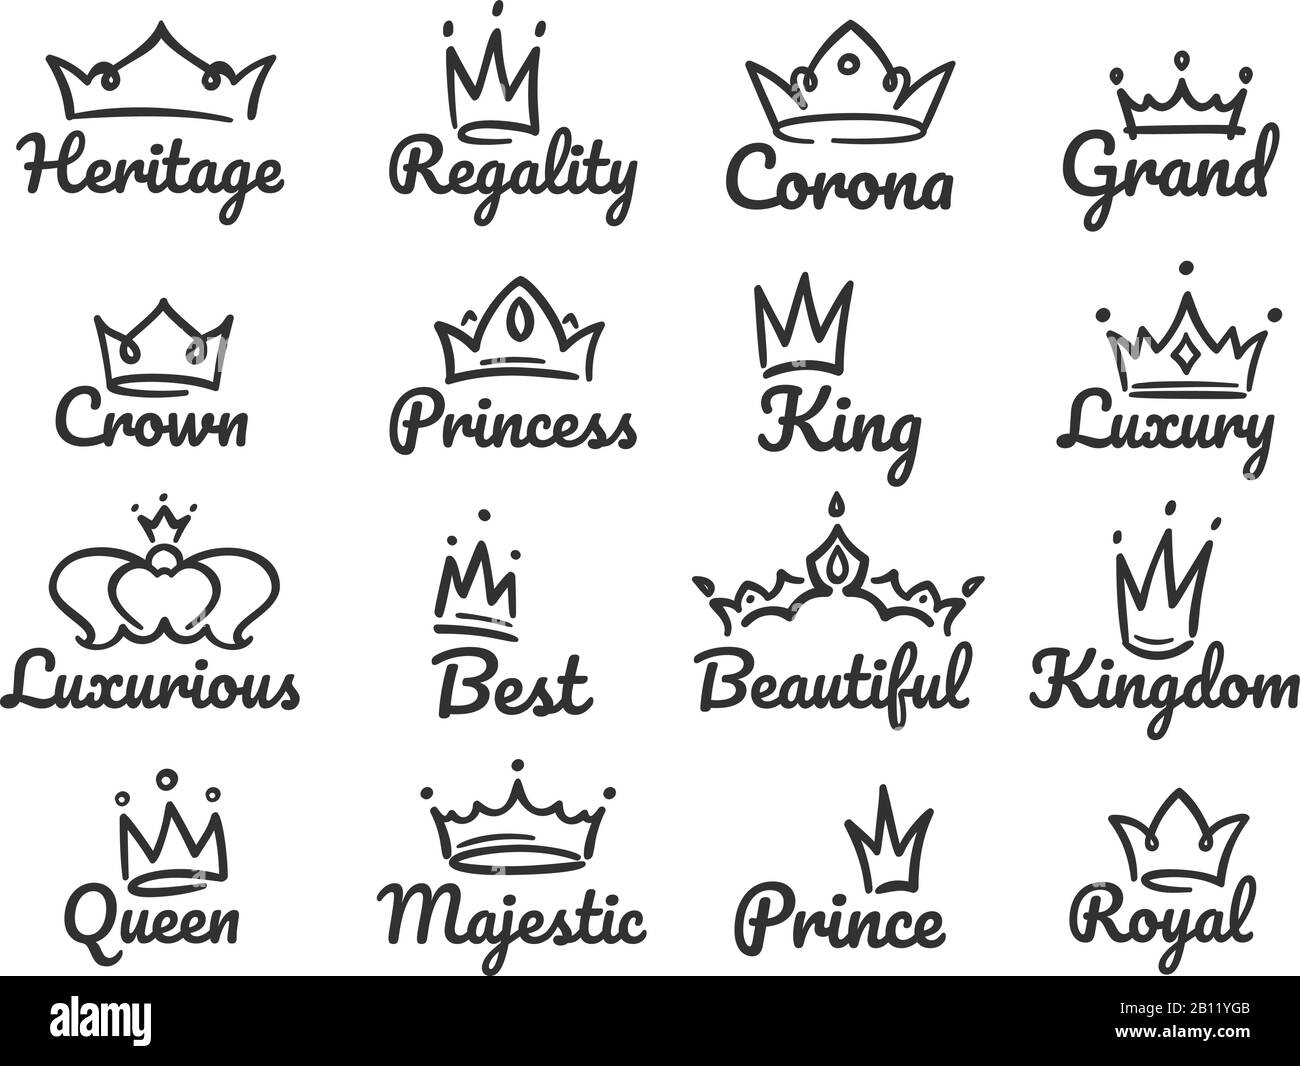 tiara drawing designs